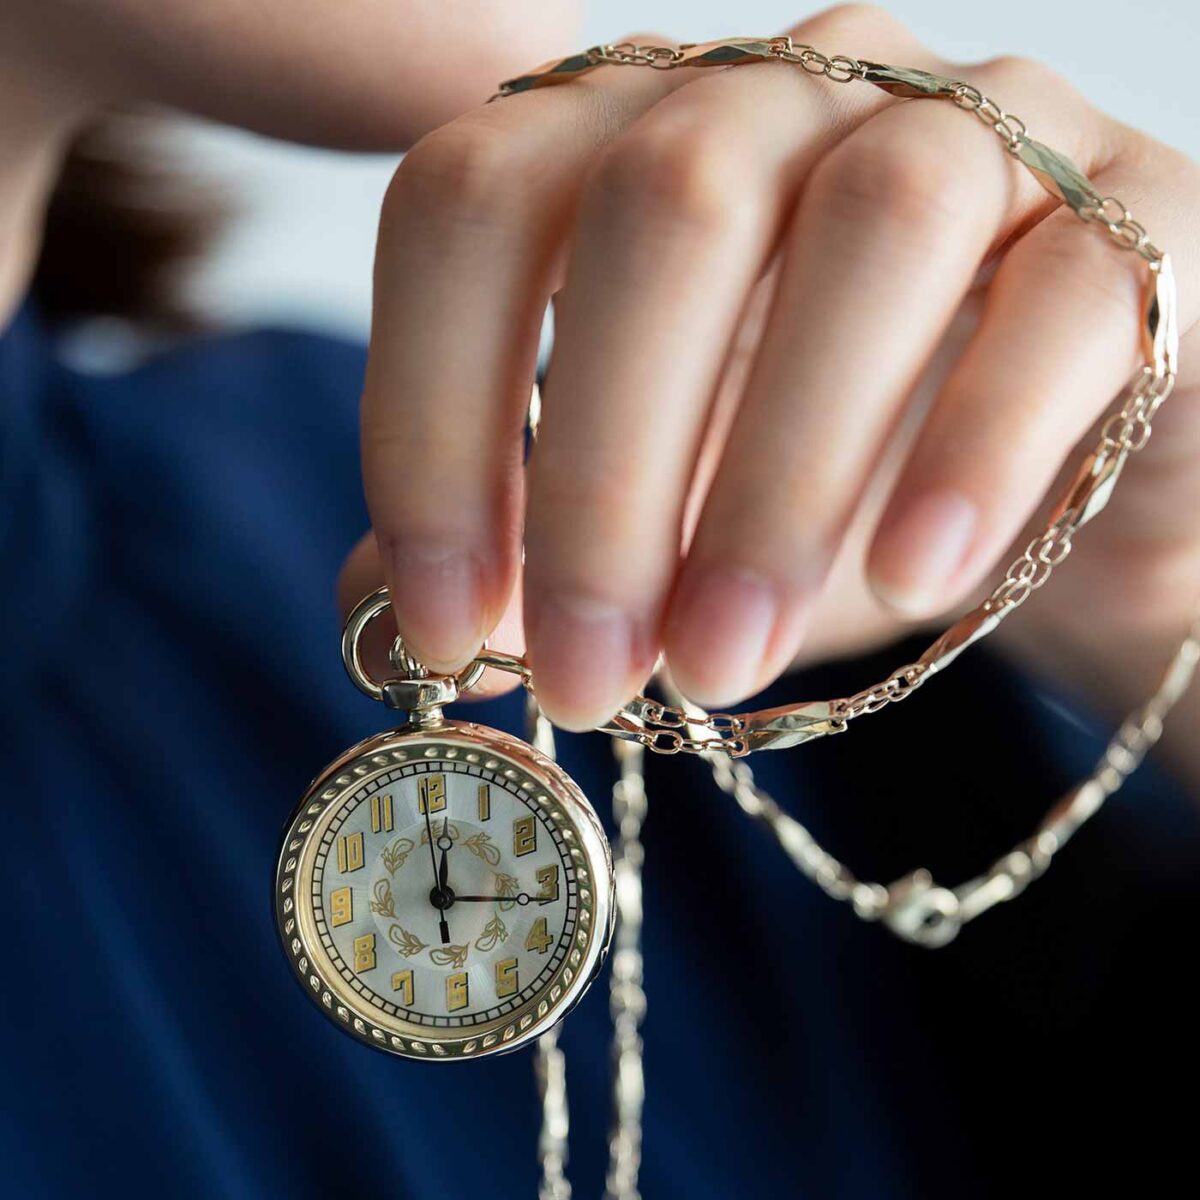 滋賀の時計工房に別注した「アールデコ調の懐中時計」と「貝文字盤のクラシック腕時計」がフェリシモ「日本職人プロジェクト」から登場